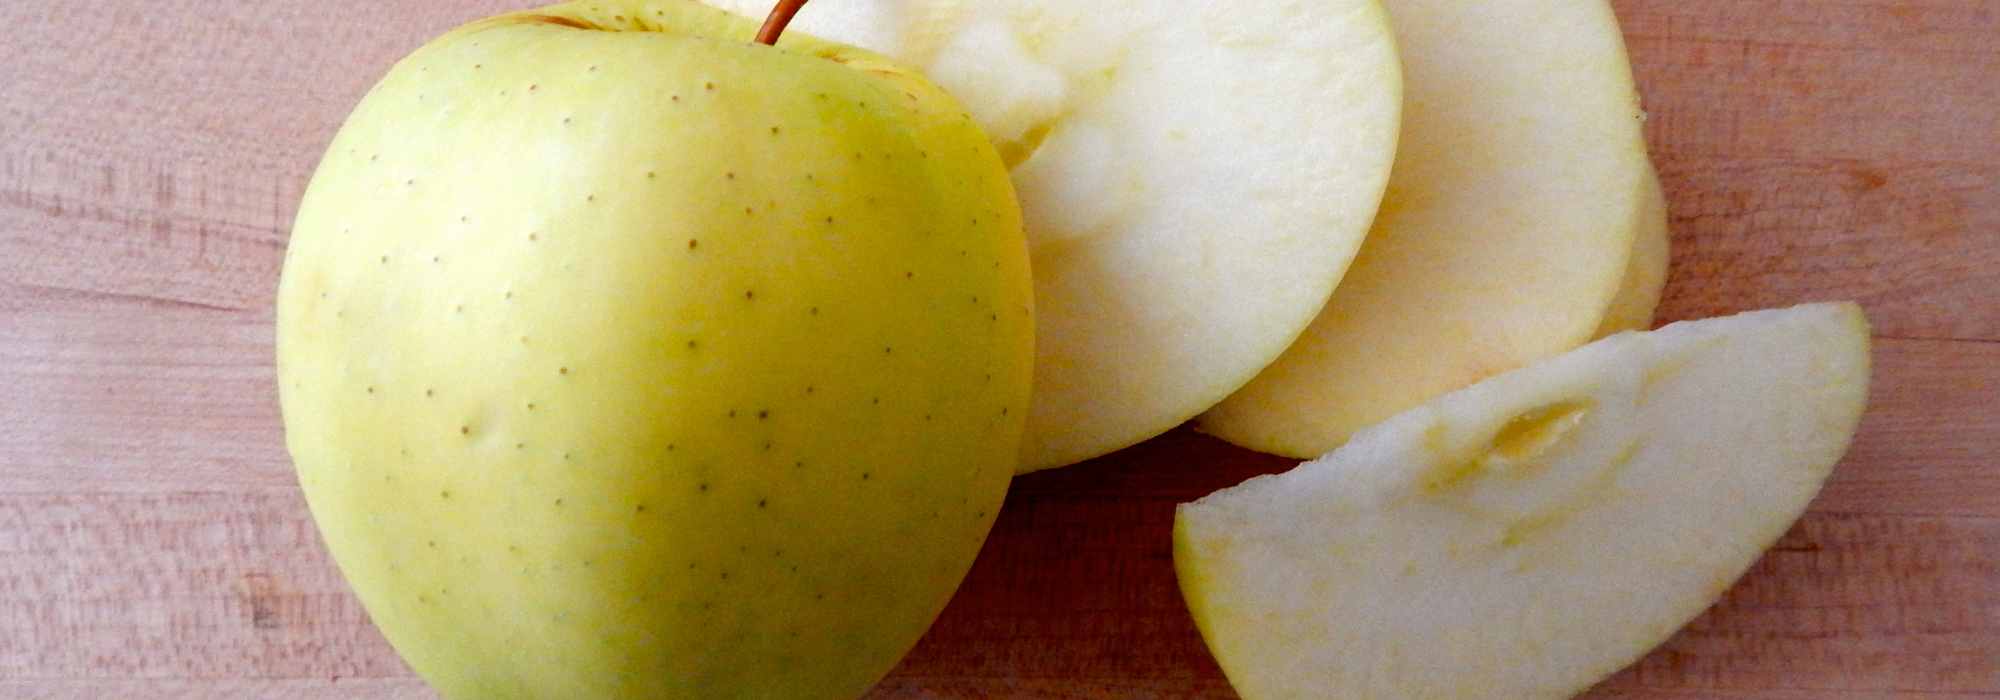 La pomme : golden, rouge, verte  le fruit d'automne bon pour la